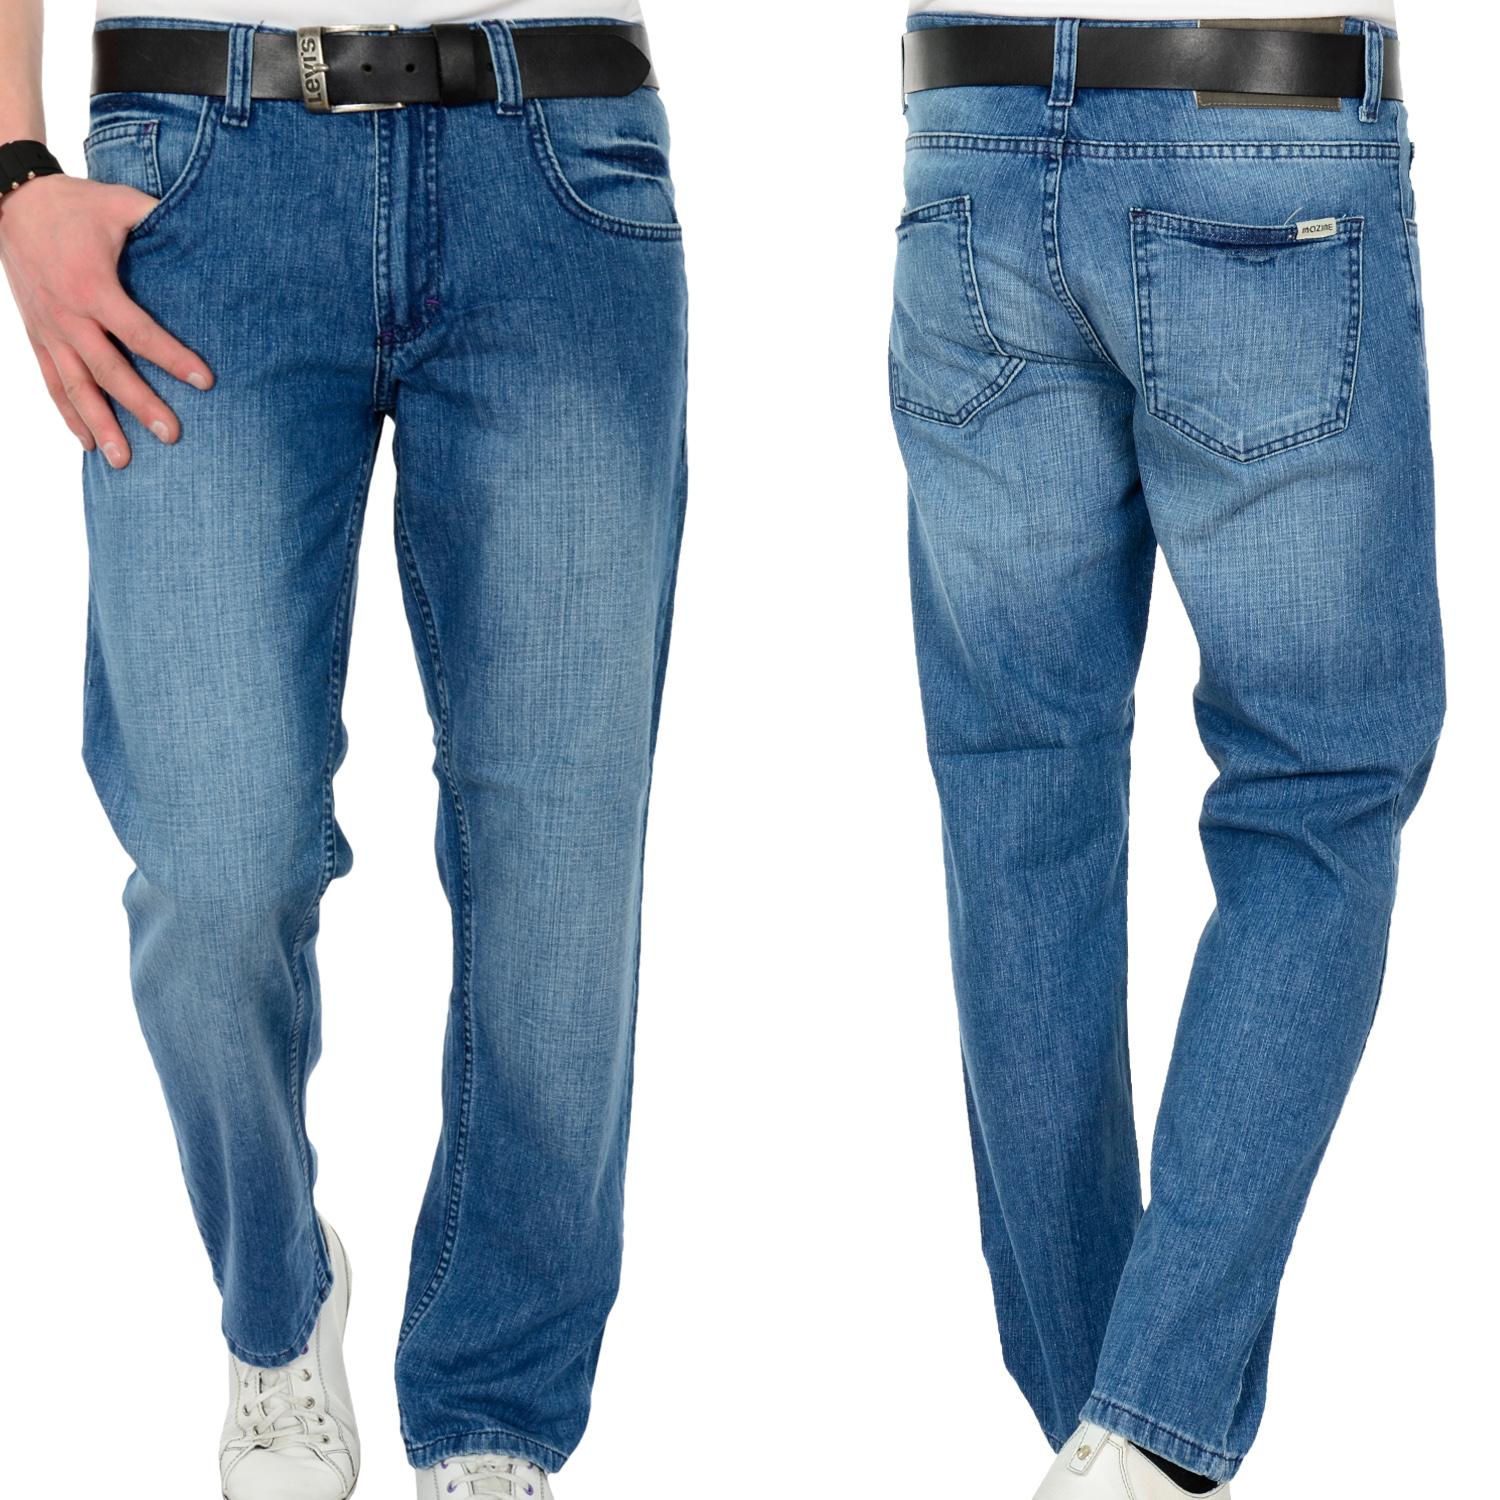 Foto Mazine Carnivoro Male Straight Fit Jeans Azul foto 874124